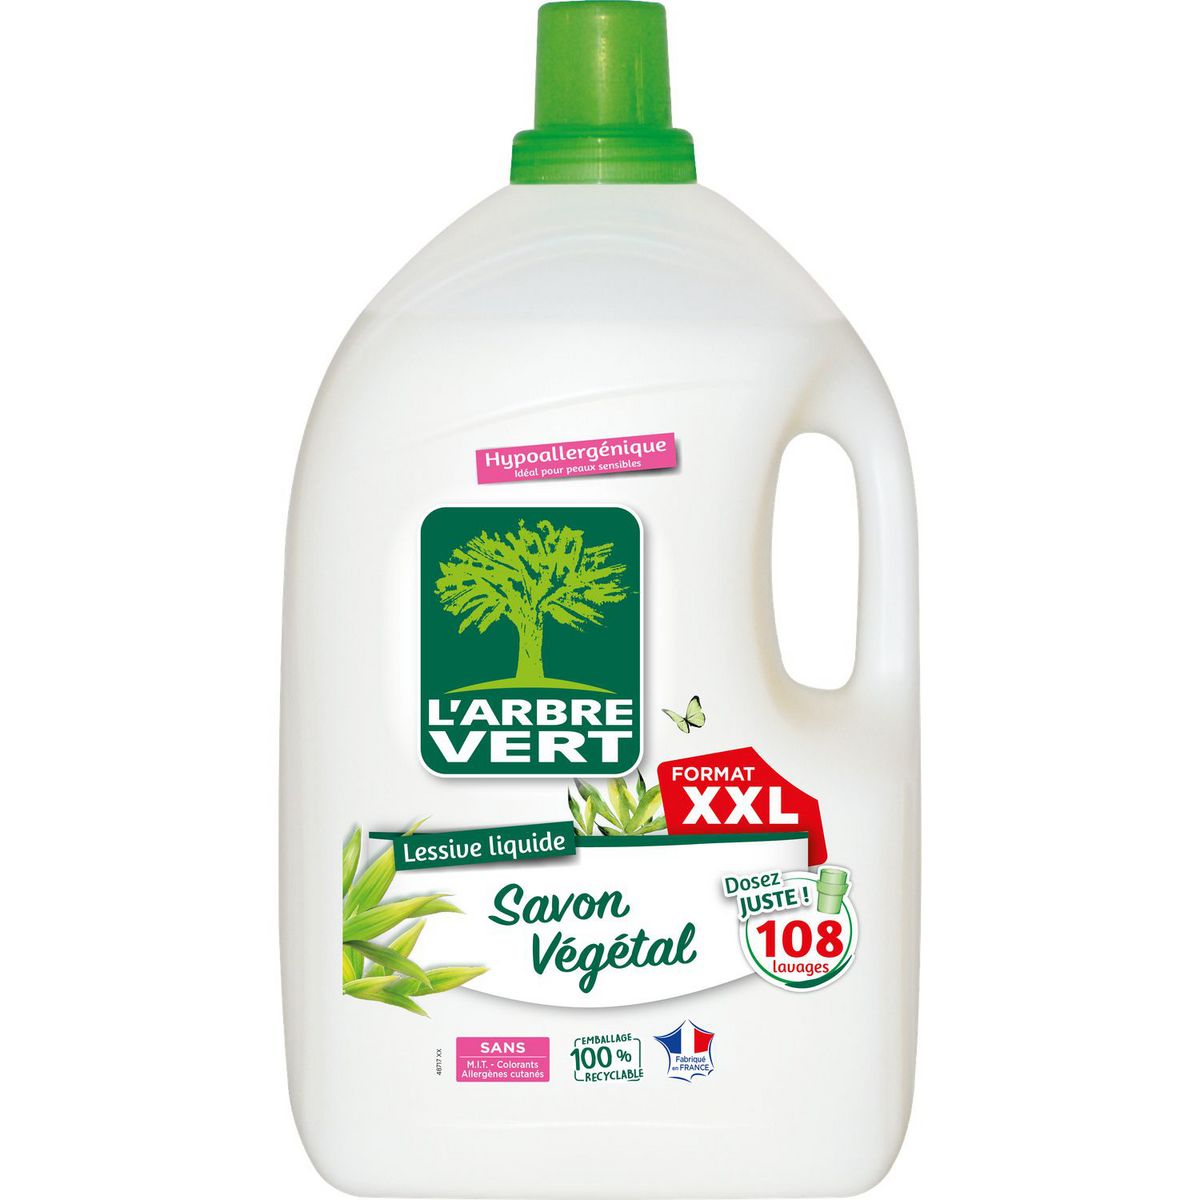 L'ARBRE VERT Lessive liquide au savon végétal format XXL 108 lavages 4.90l